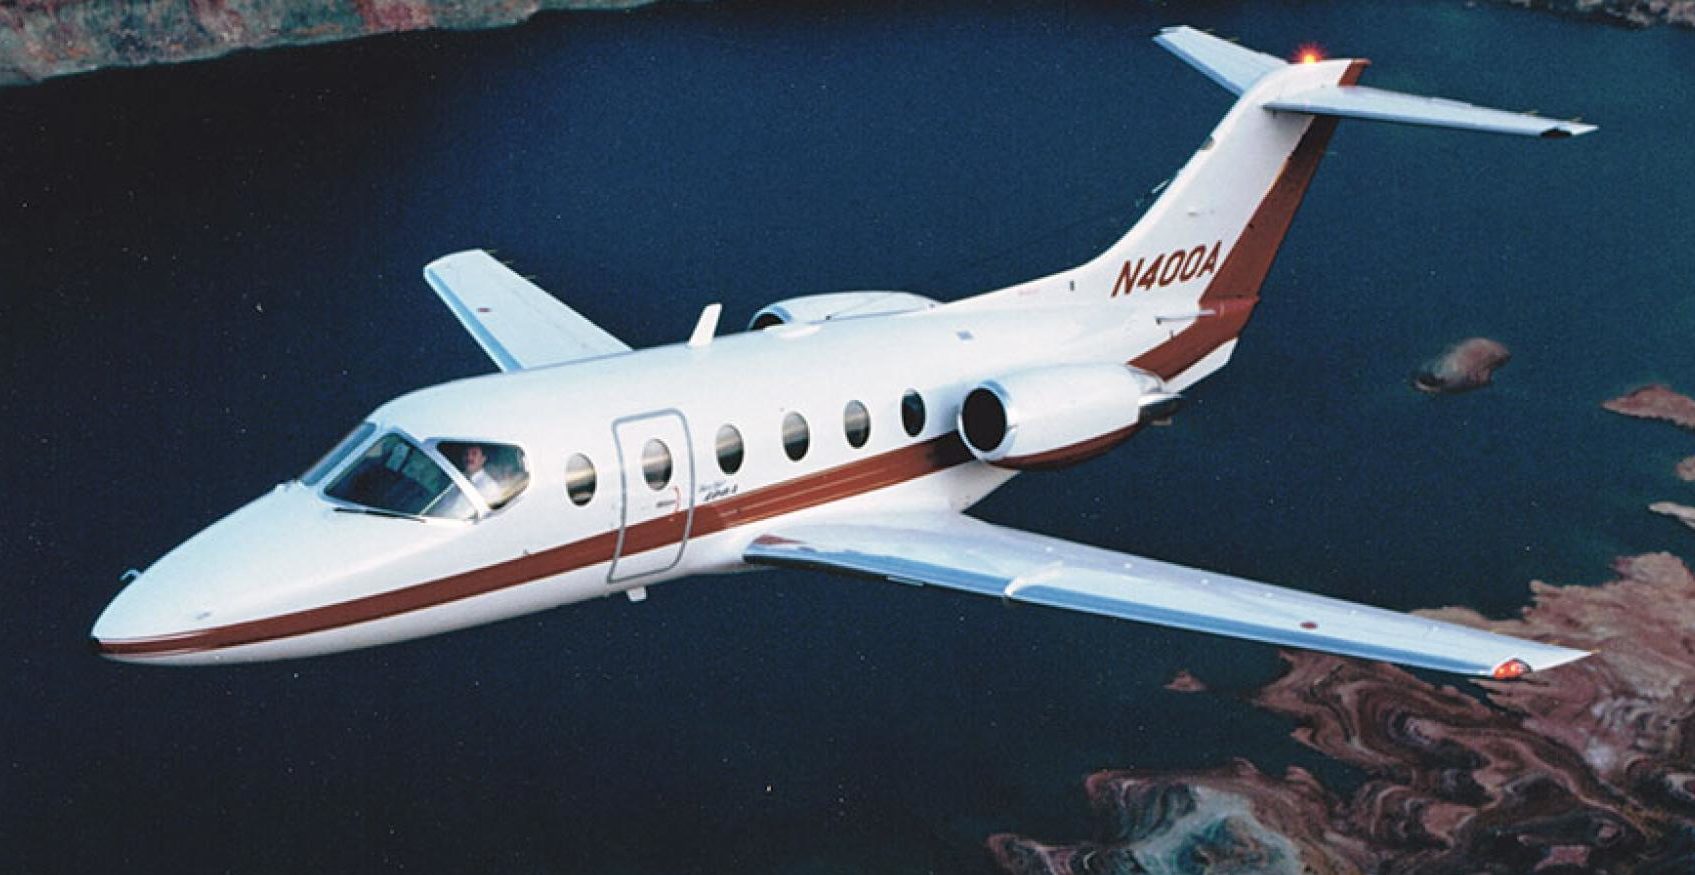 Beechjet 400A charter services